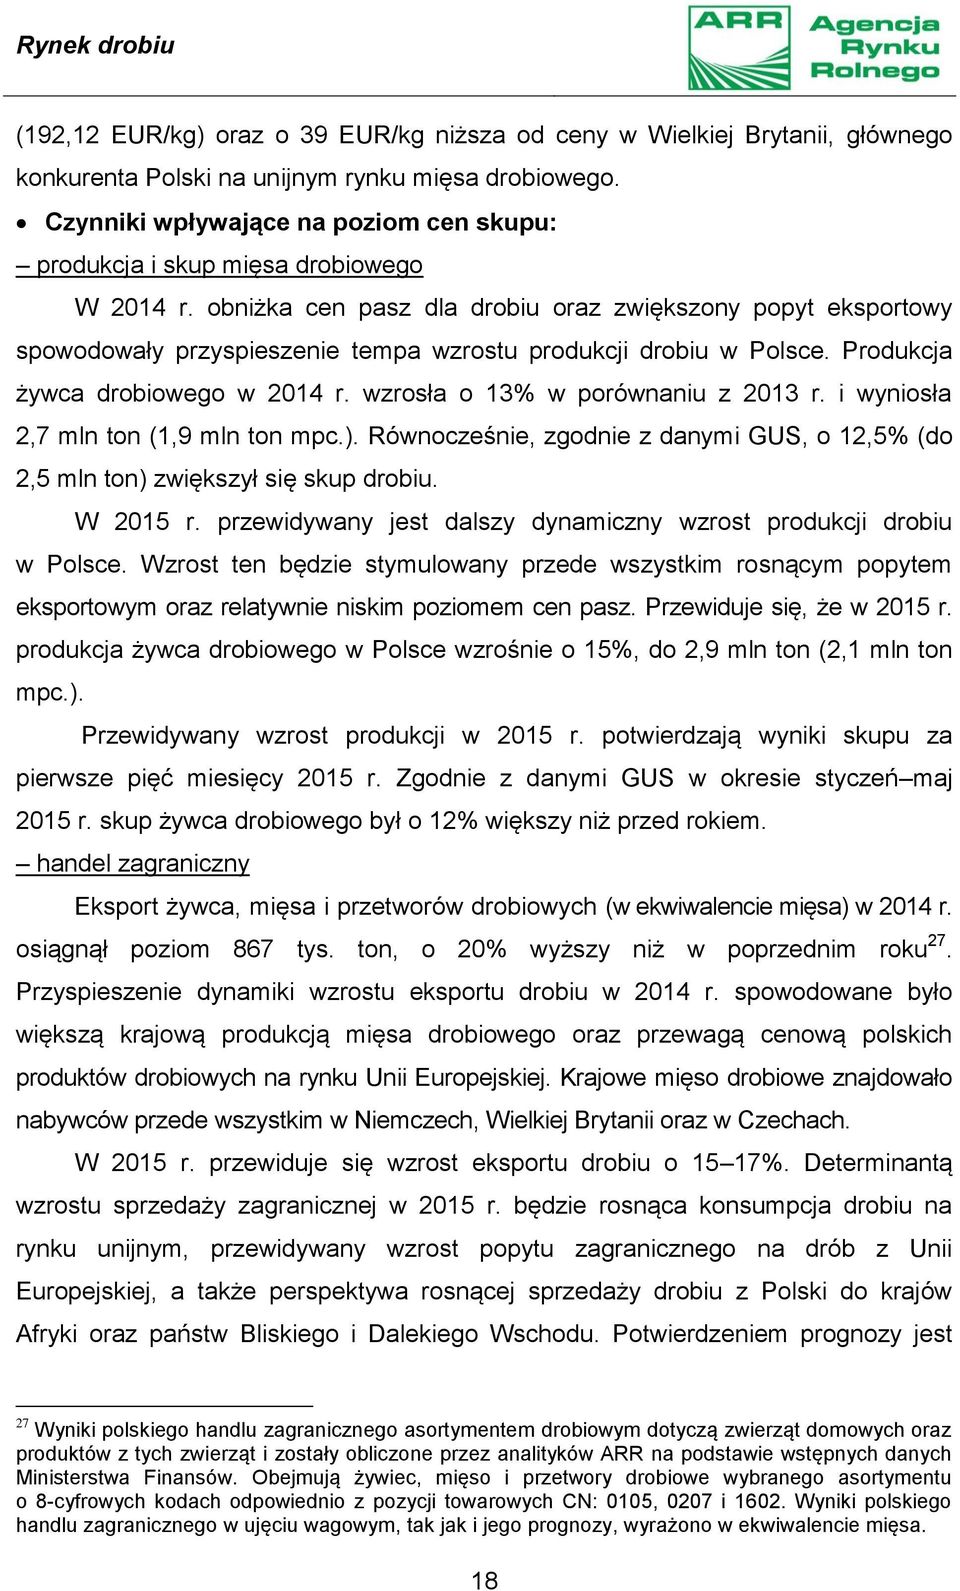 obniżka cen pasz dla drobiu oraz zwiększony popyt eksportowy spowodowały przyspieszenie tempa wzrostu produkcji drobiu w Polsce. Produkcja żywca drobiowego w 2014 r.